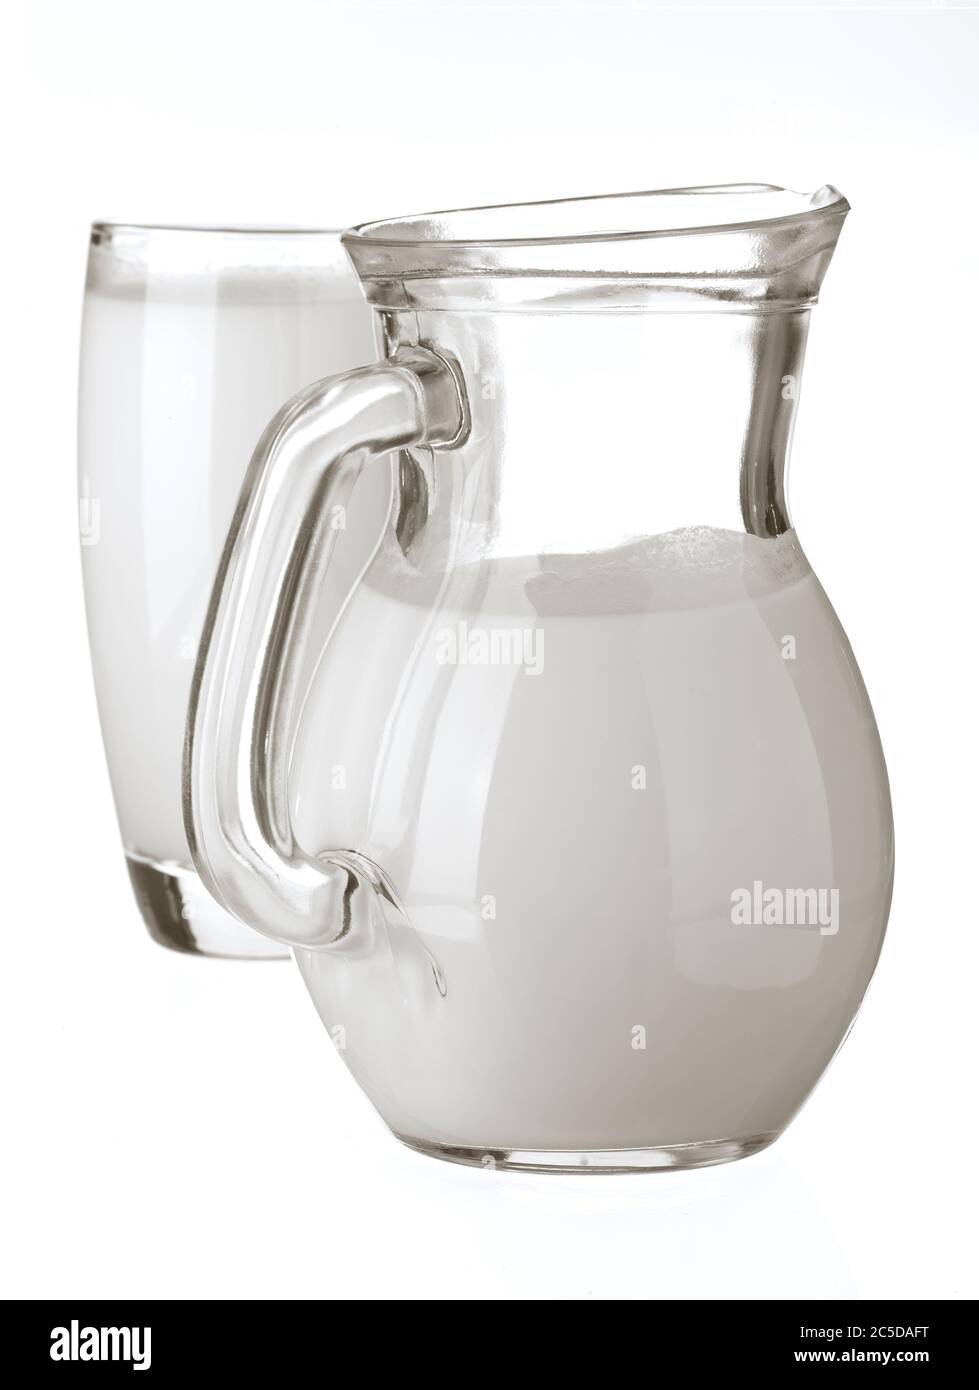 Latte intero naturale in una caraffa e un bicchiere su sfondo bianco. Primo piano, vista laterale, immagine del prodotto ad alta risoluzione. Foto Stock